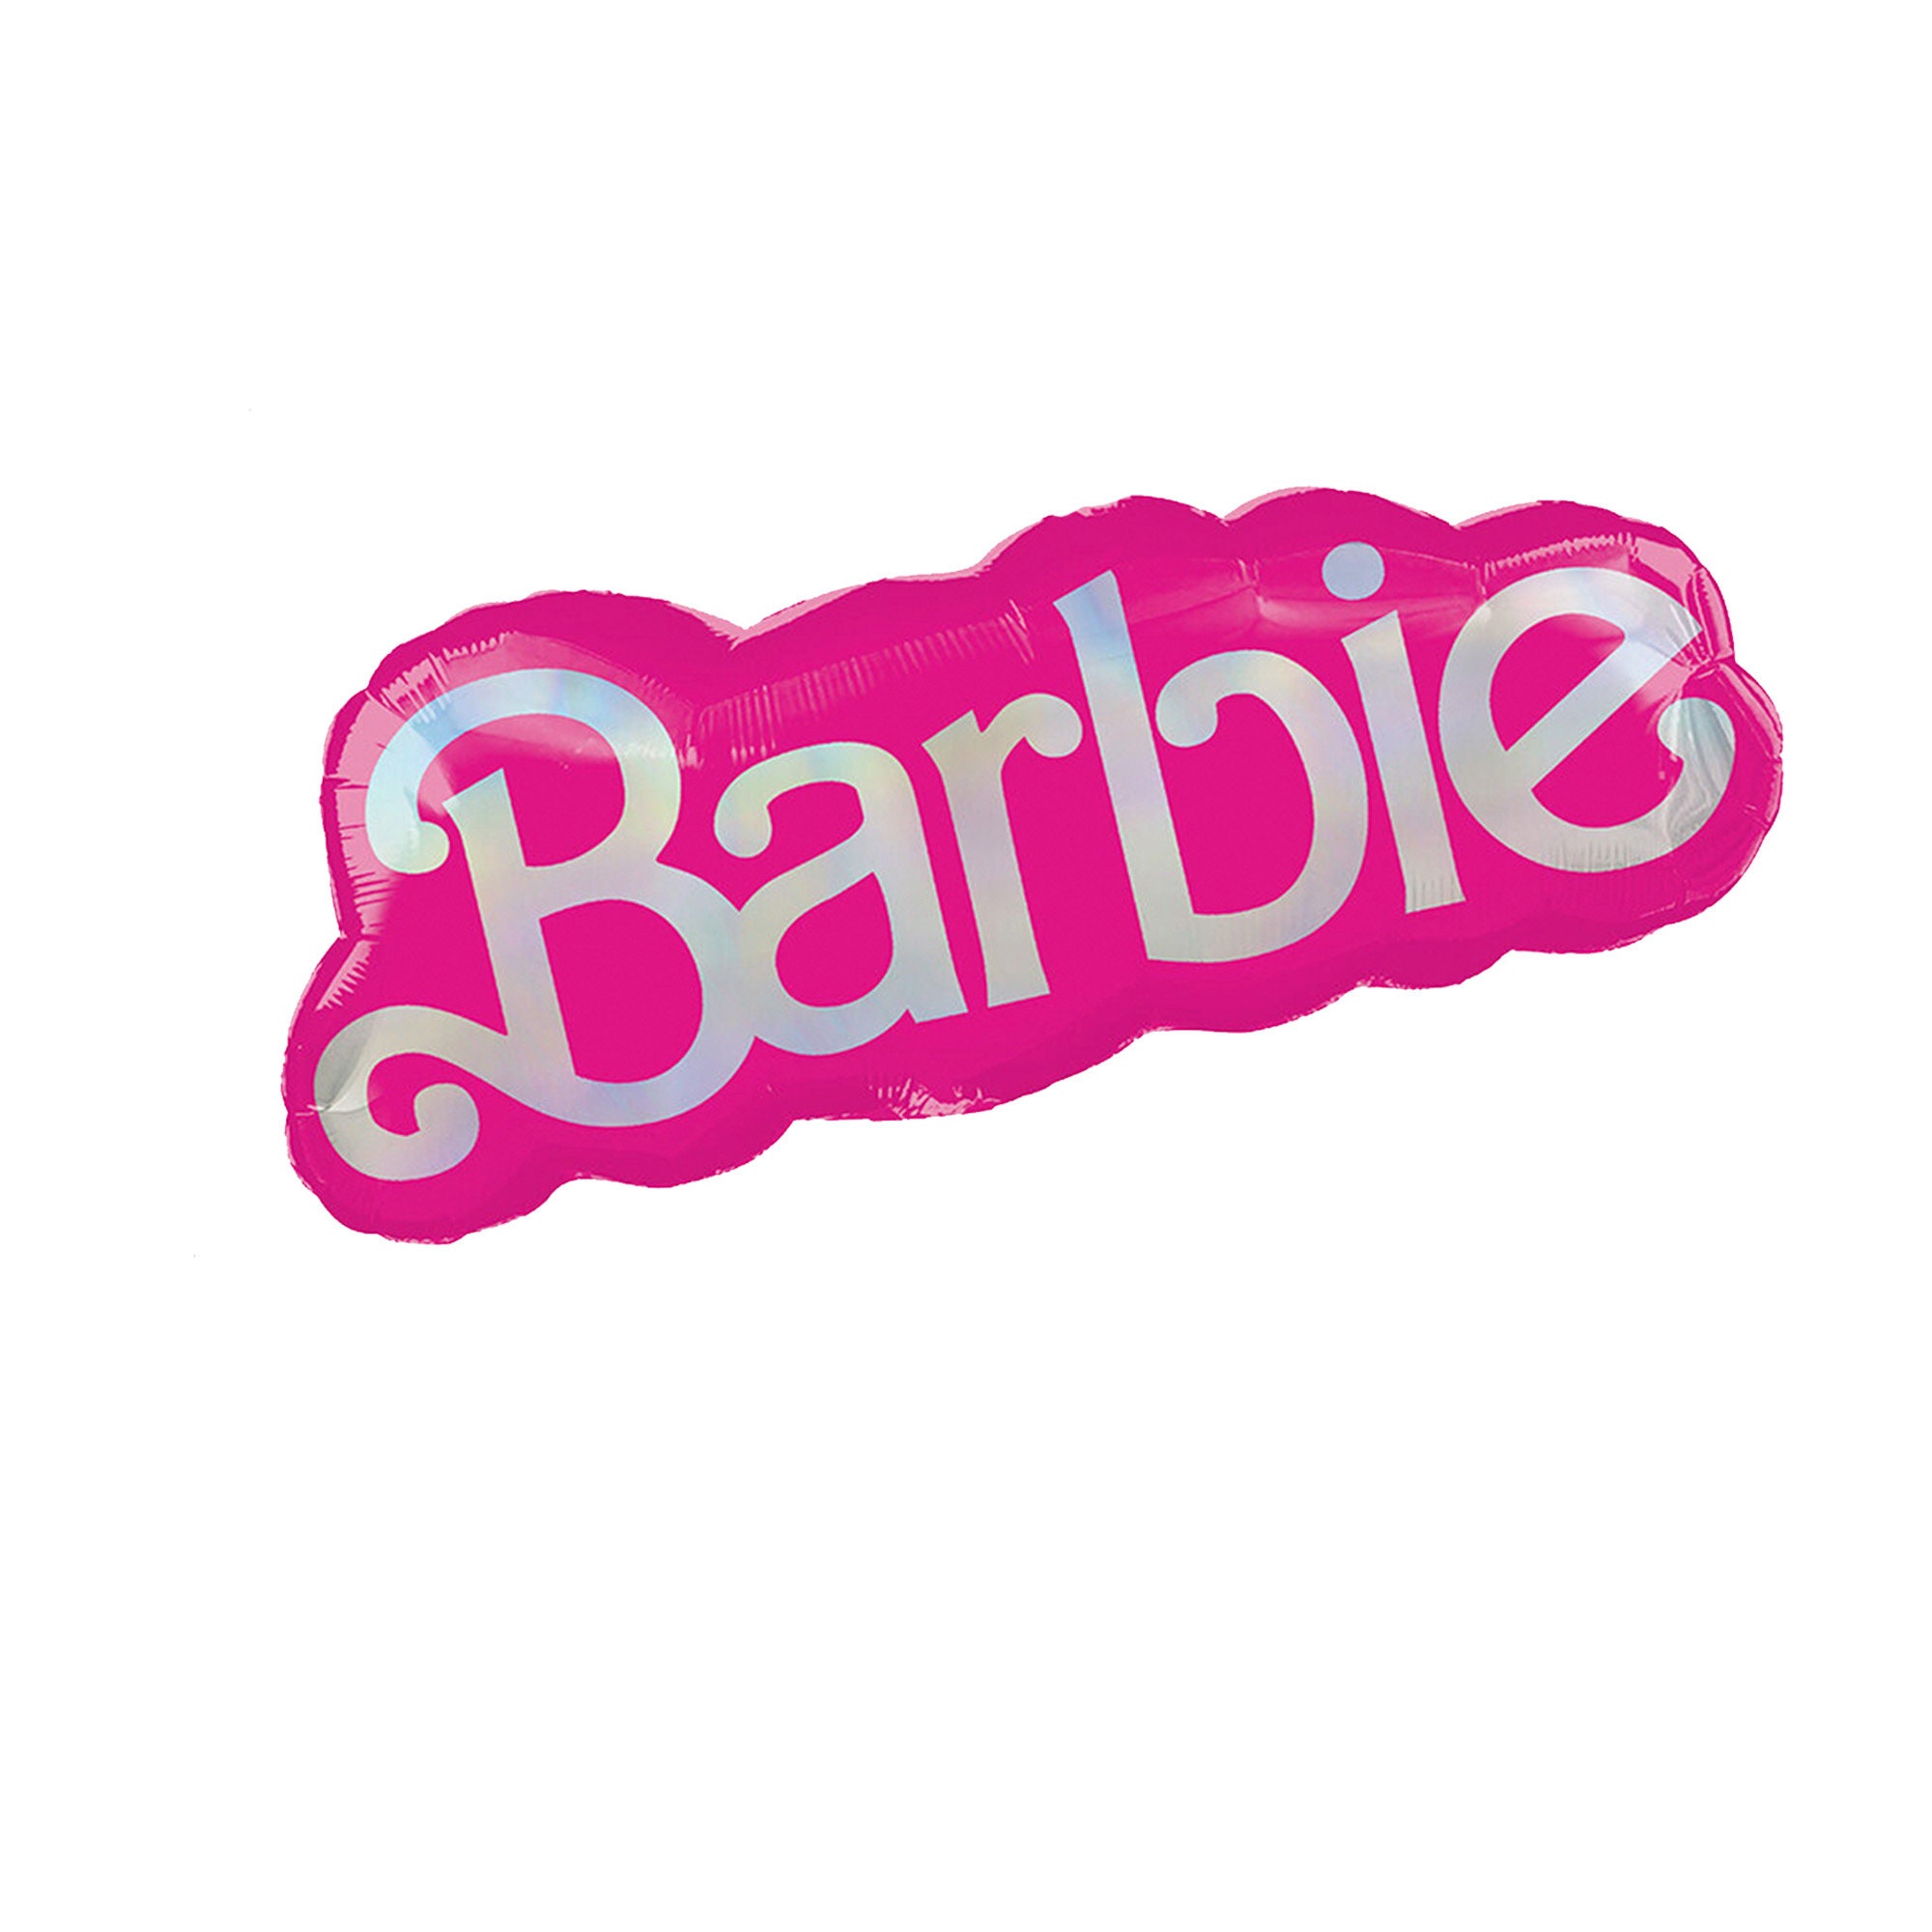 Balão de folha Barbie redondo - Alemanha, Novo - plataforma de